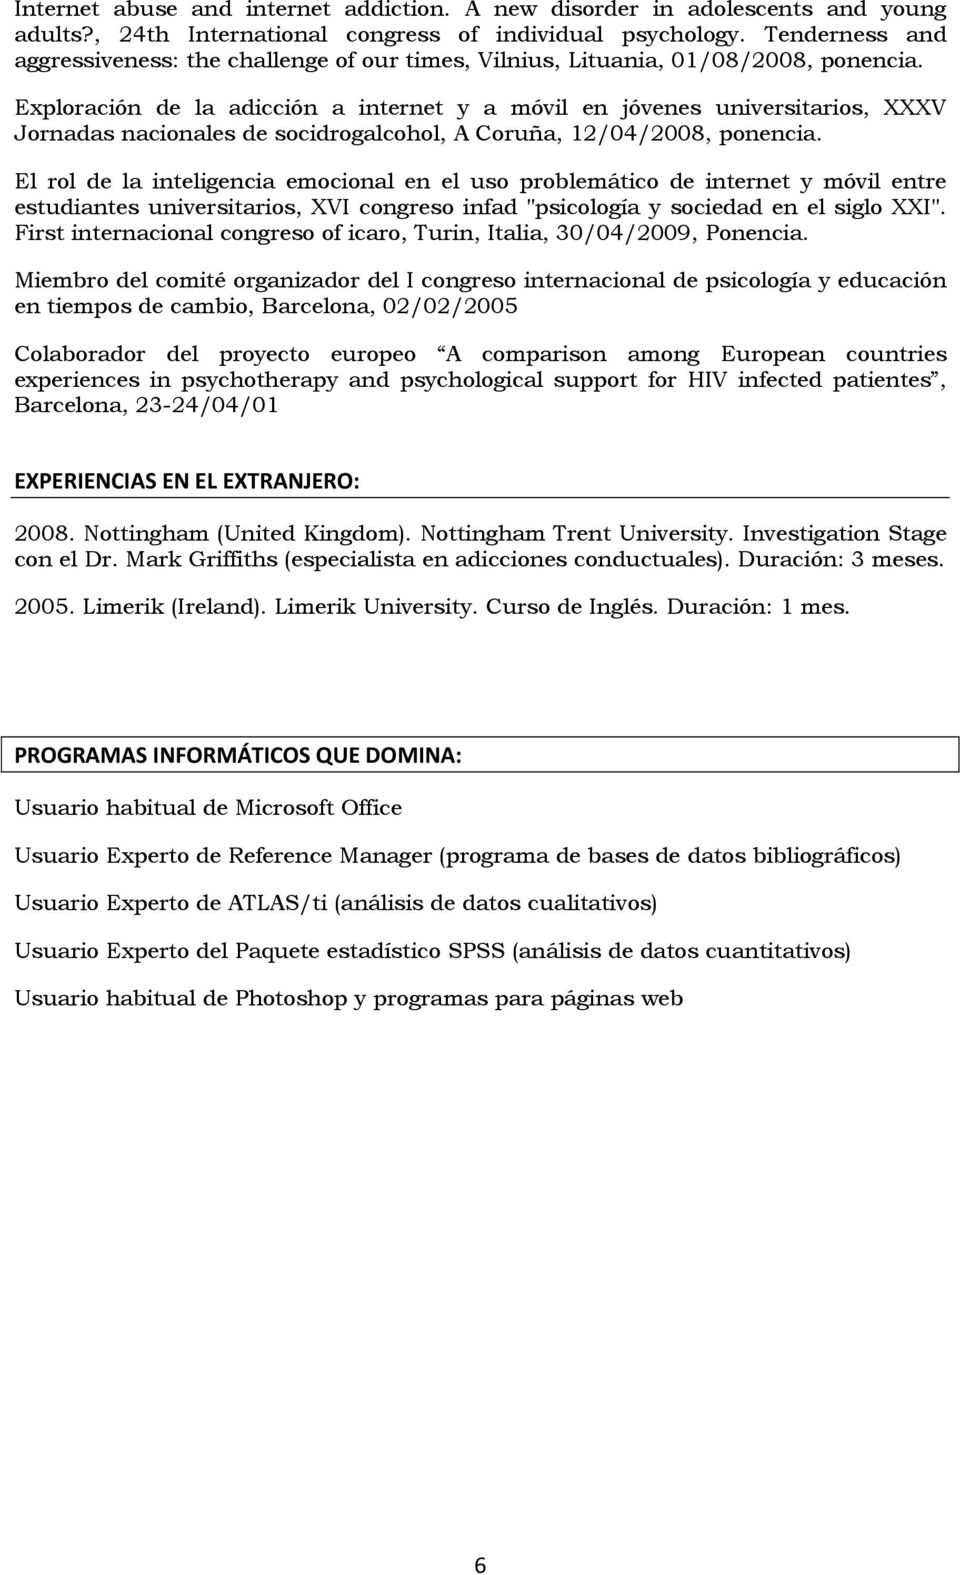 Exploración de la adicción a internet y a móvil en jóvenes universitarios, XXXV Jornadas nacionales de socidrogalcohol, A Coruña, 12/04/2008, ponencia.